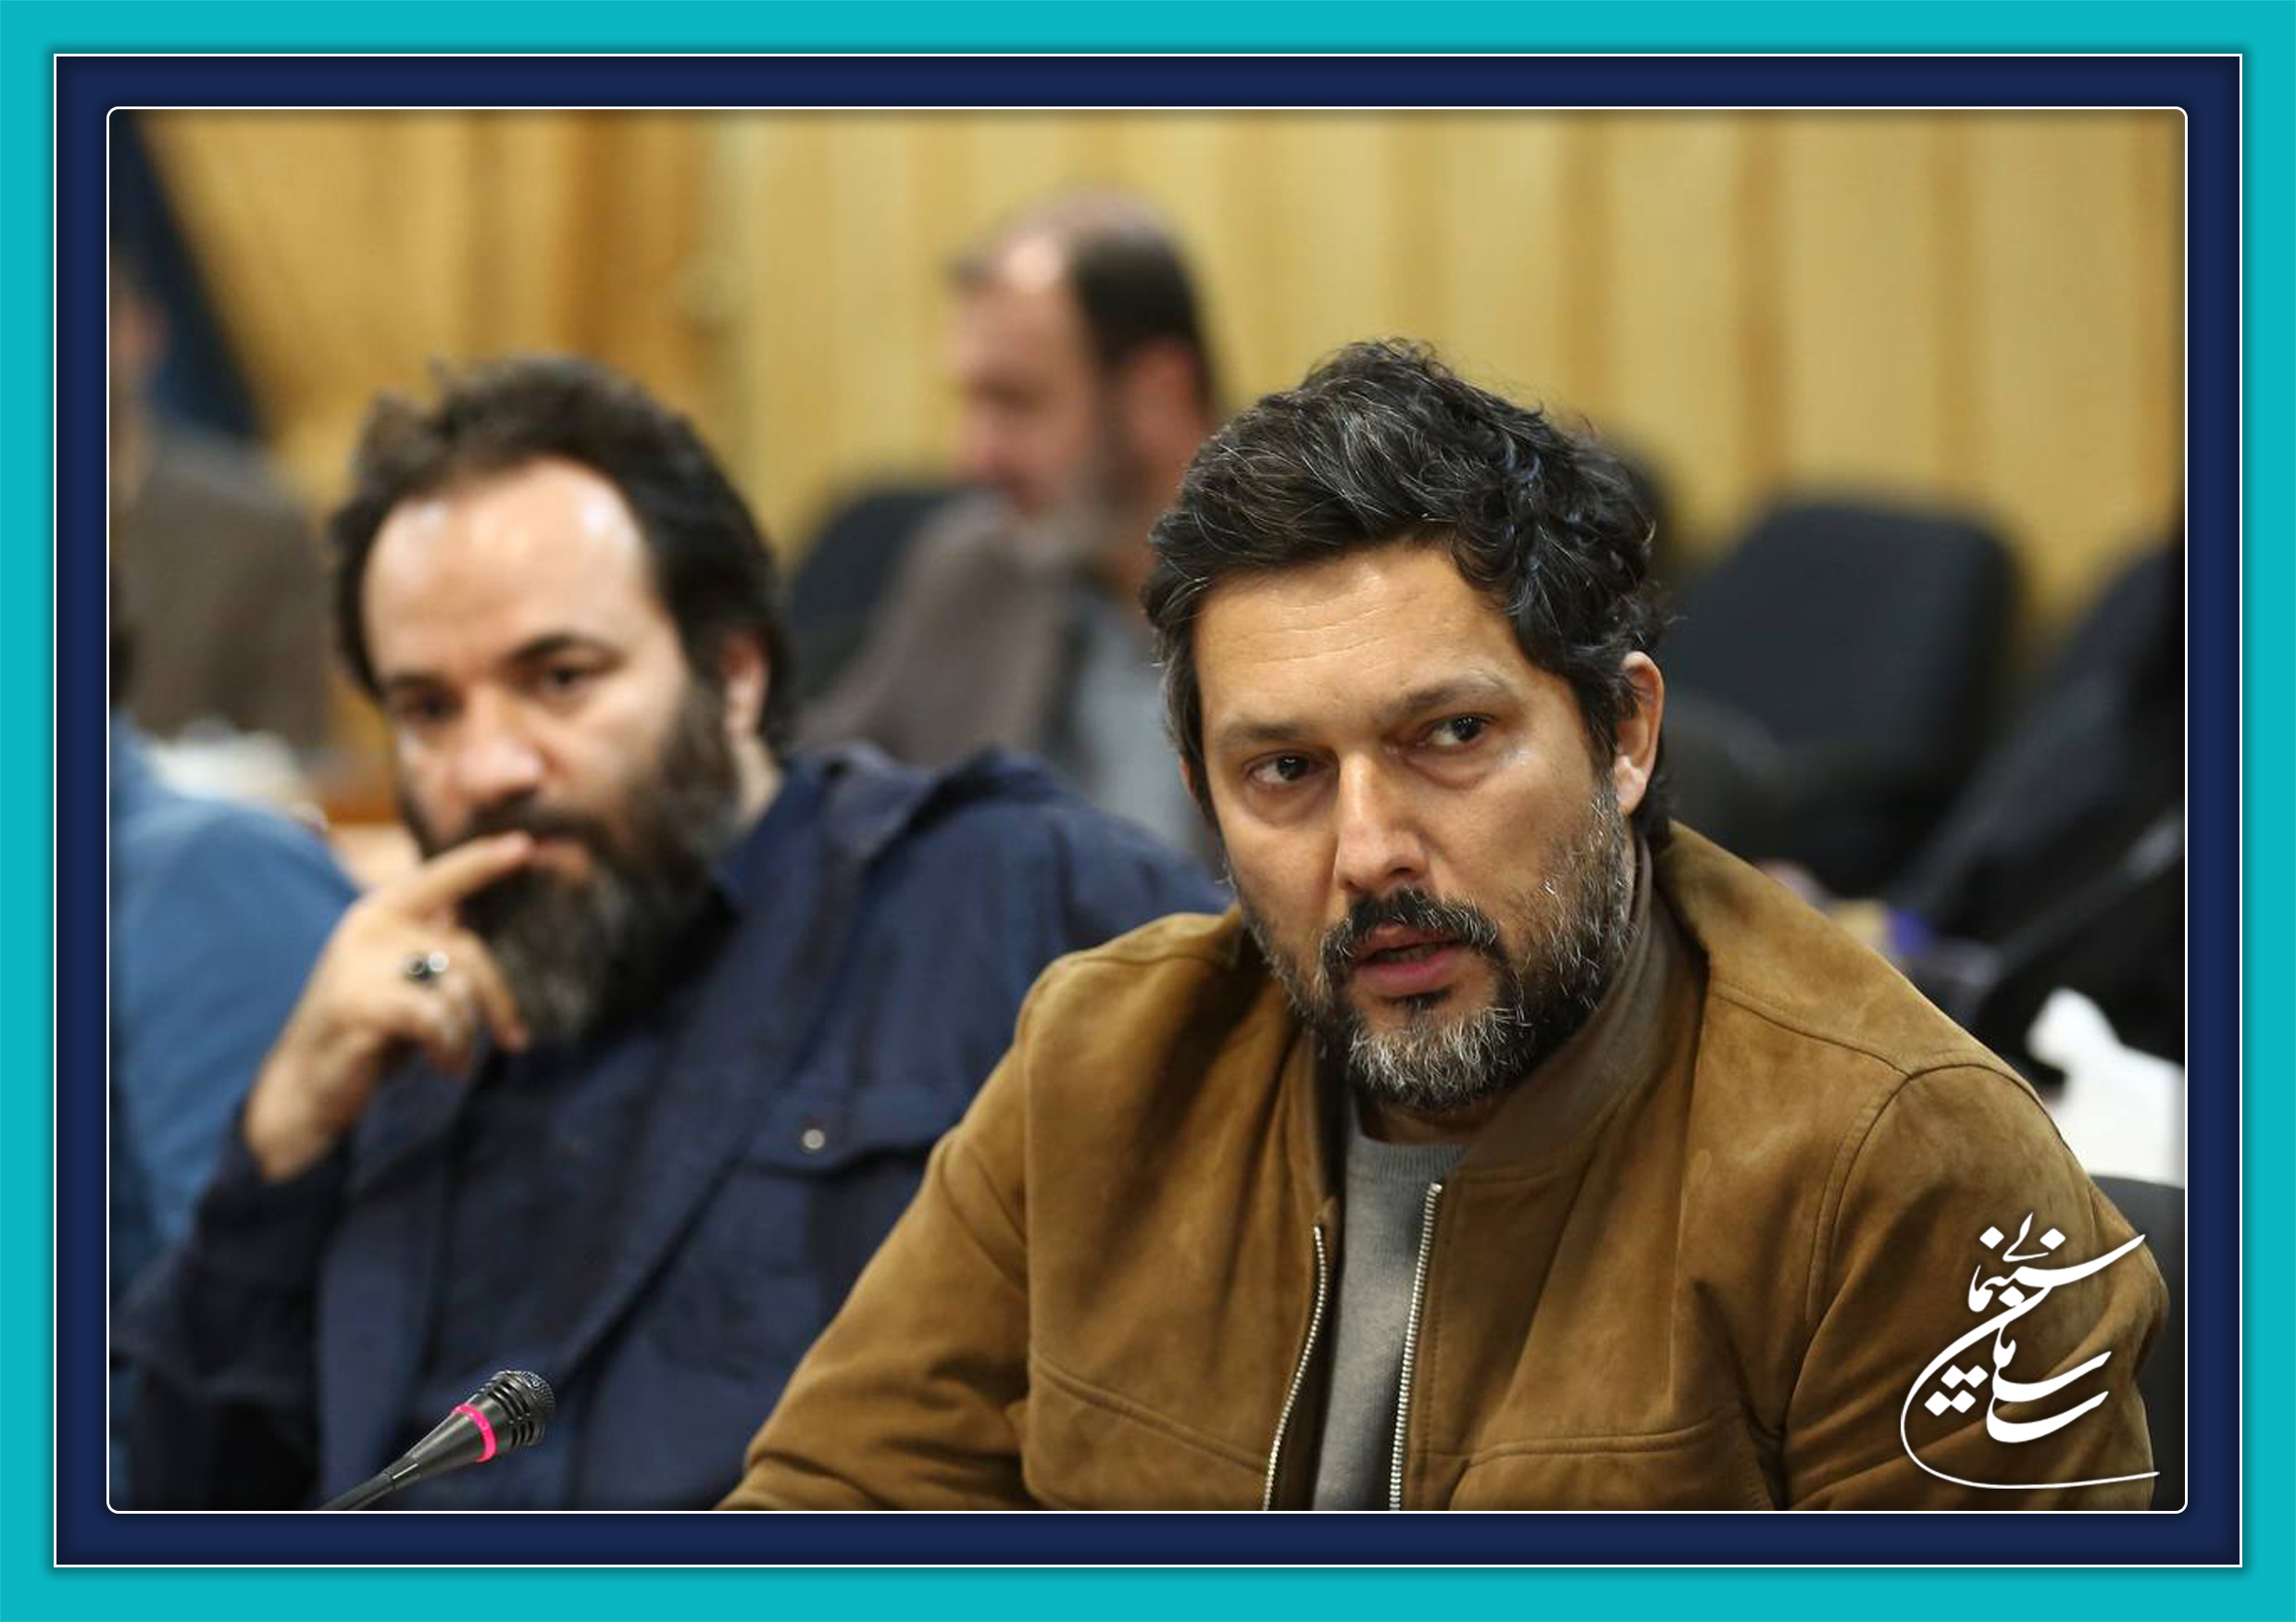 بهرام رادان: امیدوارم روزی در زمینه ارزآوری و سود در سینما حرف بزنیم | حامد بهداد:. ما کارگر معدن نیستیم و هنرمندیم!